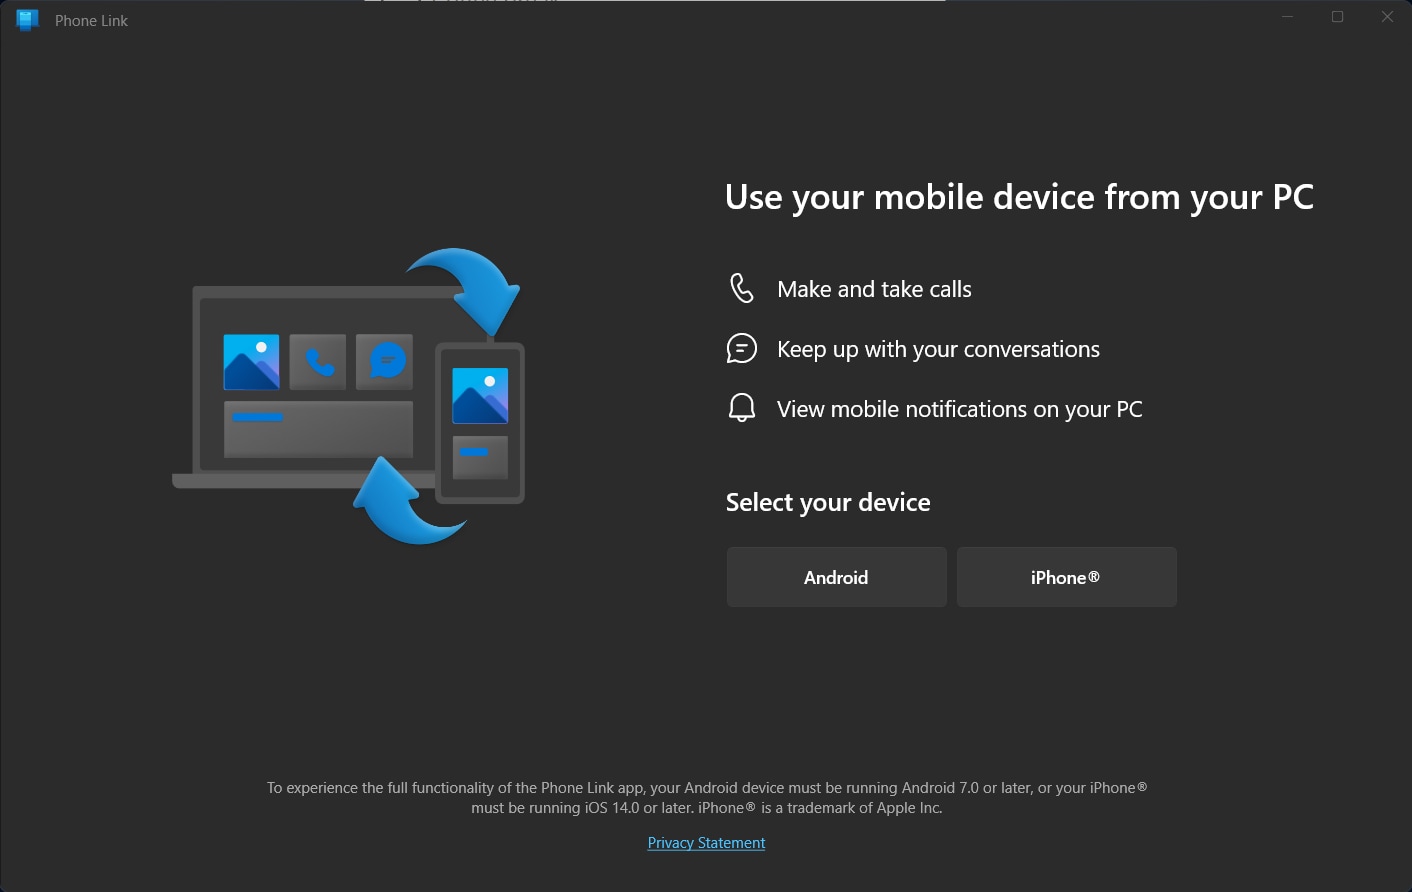 V aplikaci Windows Phone Link použijte tlačítko Android nebo iPhone